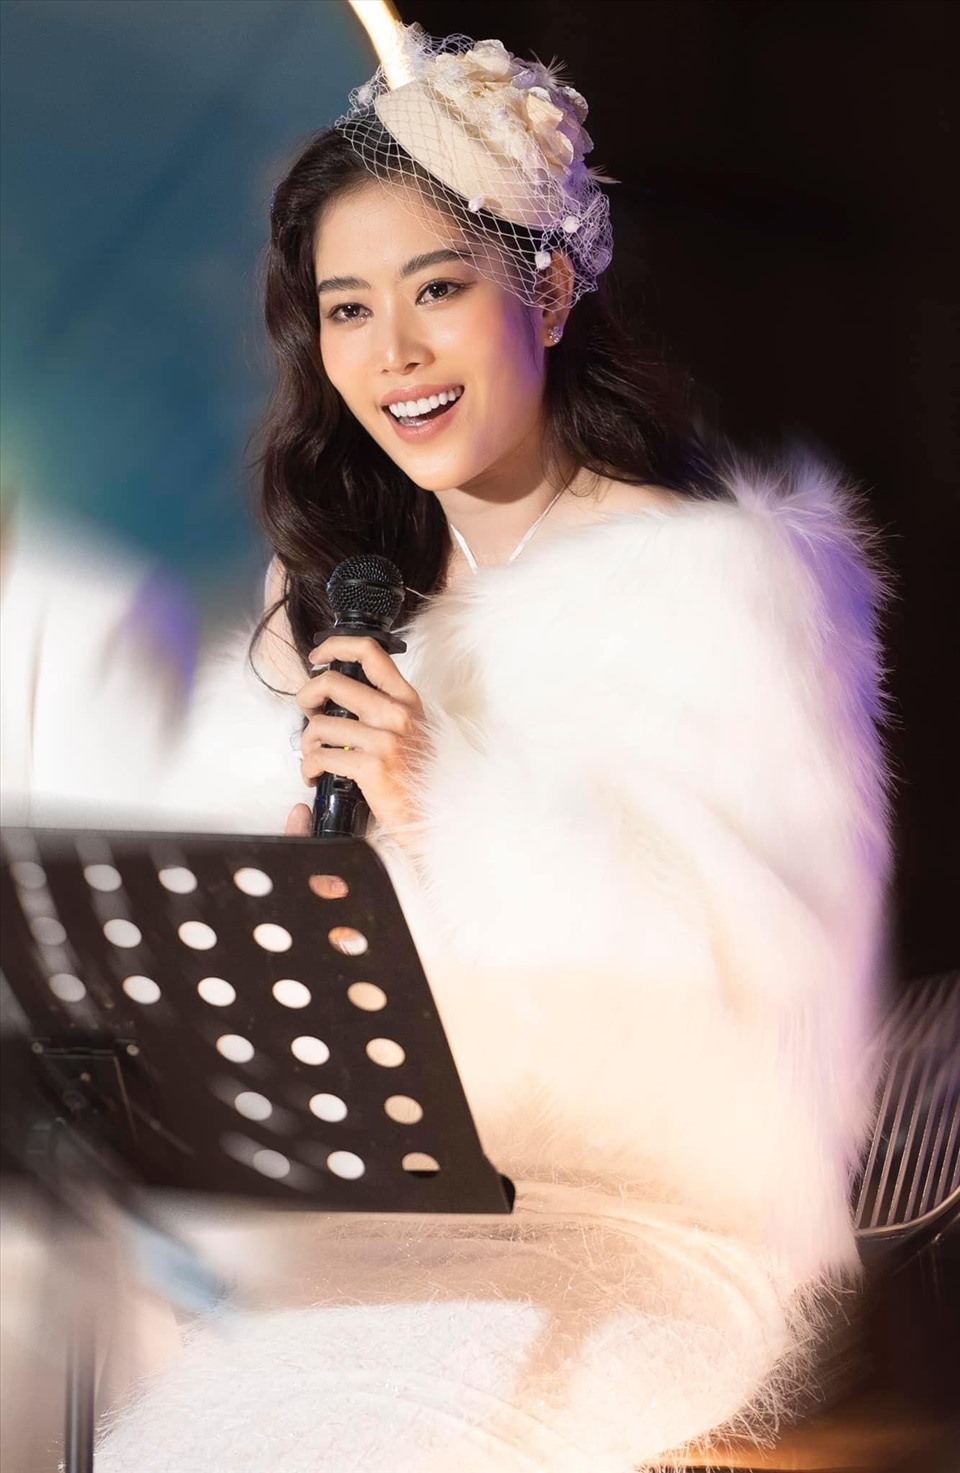 Phần lớn ý kiến dân mạng đều dần công nhận năng lực biểu diễn và sự hoàn thiện trong chất giọng của Nam Em. Sự động viên của khán giả là niềm động lực để Nam Em trở nên tốt hơn nữa trong thời gian tới và cũng là hành trang để cô chuẩn bị tiến đến vòng chung kết  Miss World Vietnam 2022 sẽ diễn ra vào tháng 7 và 8.2022.